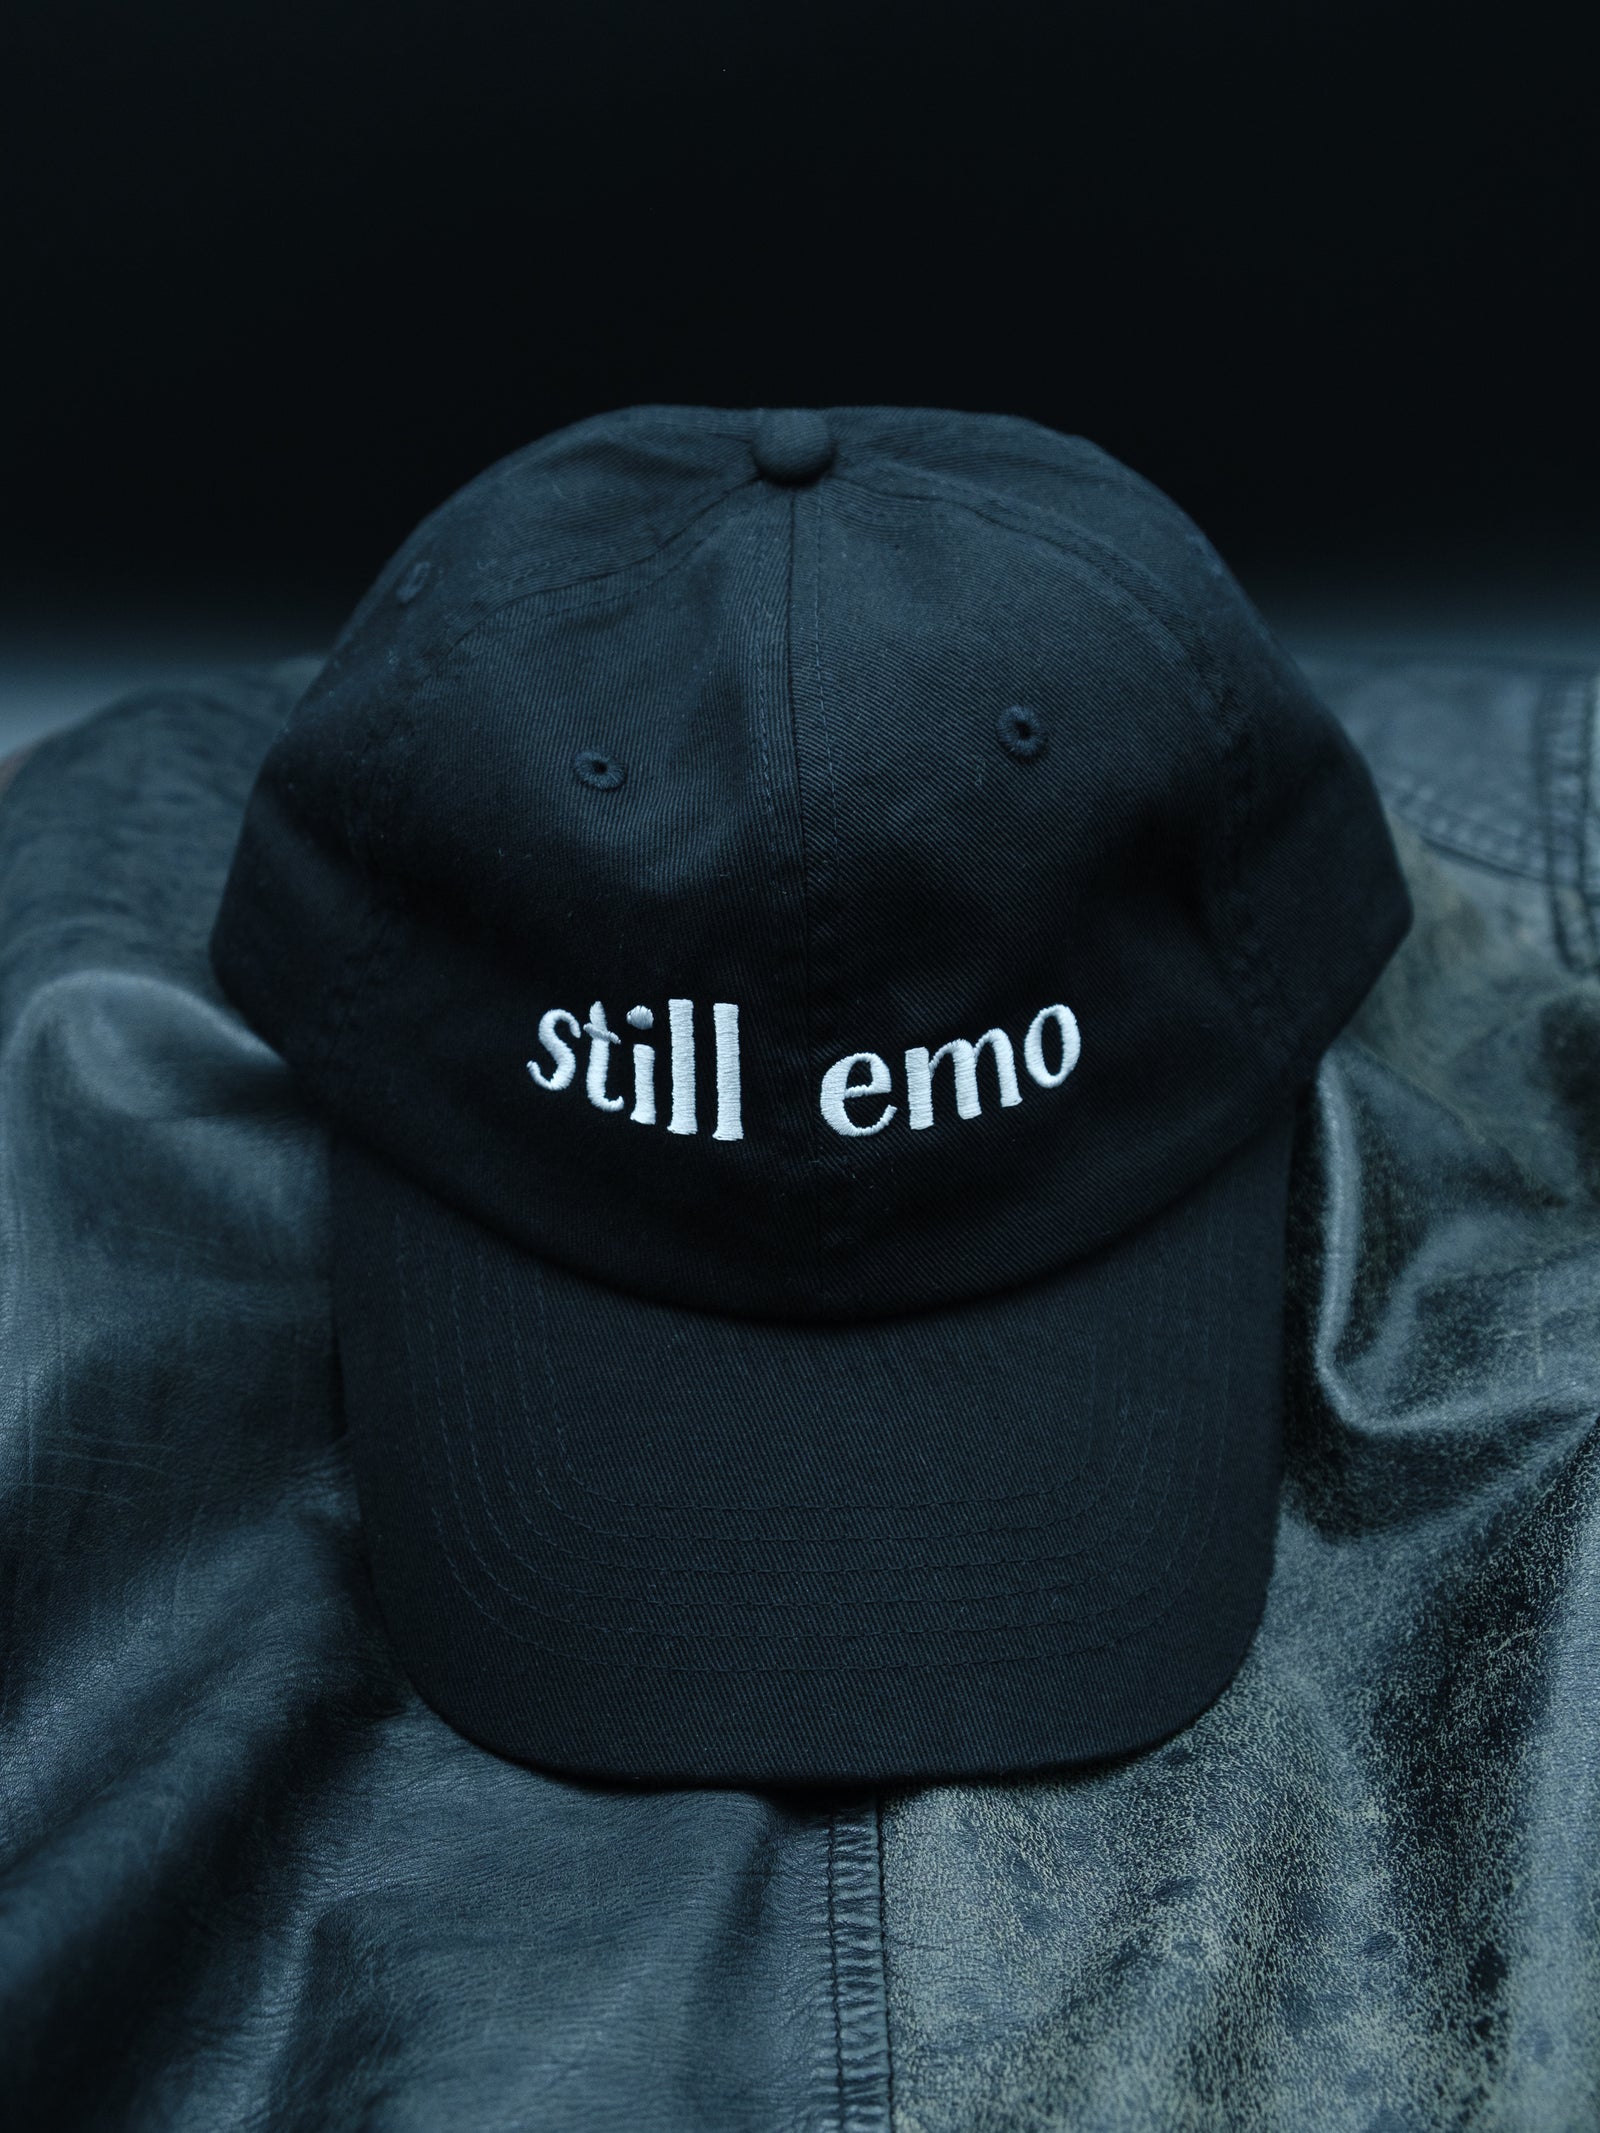 Still Emo Dad Hat